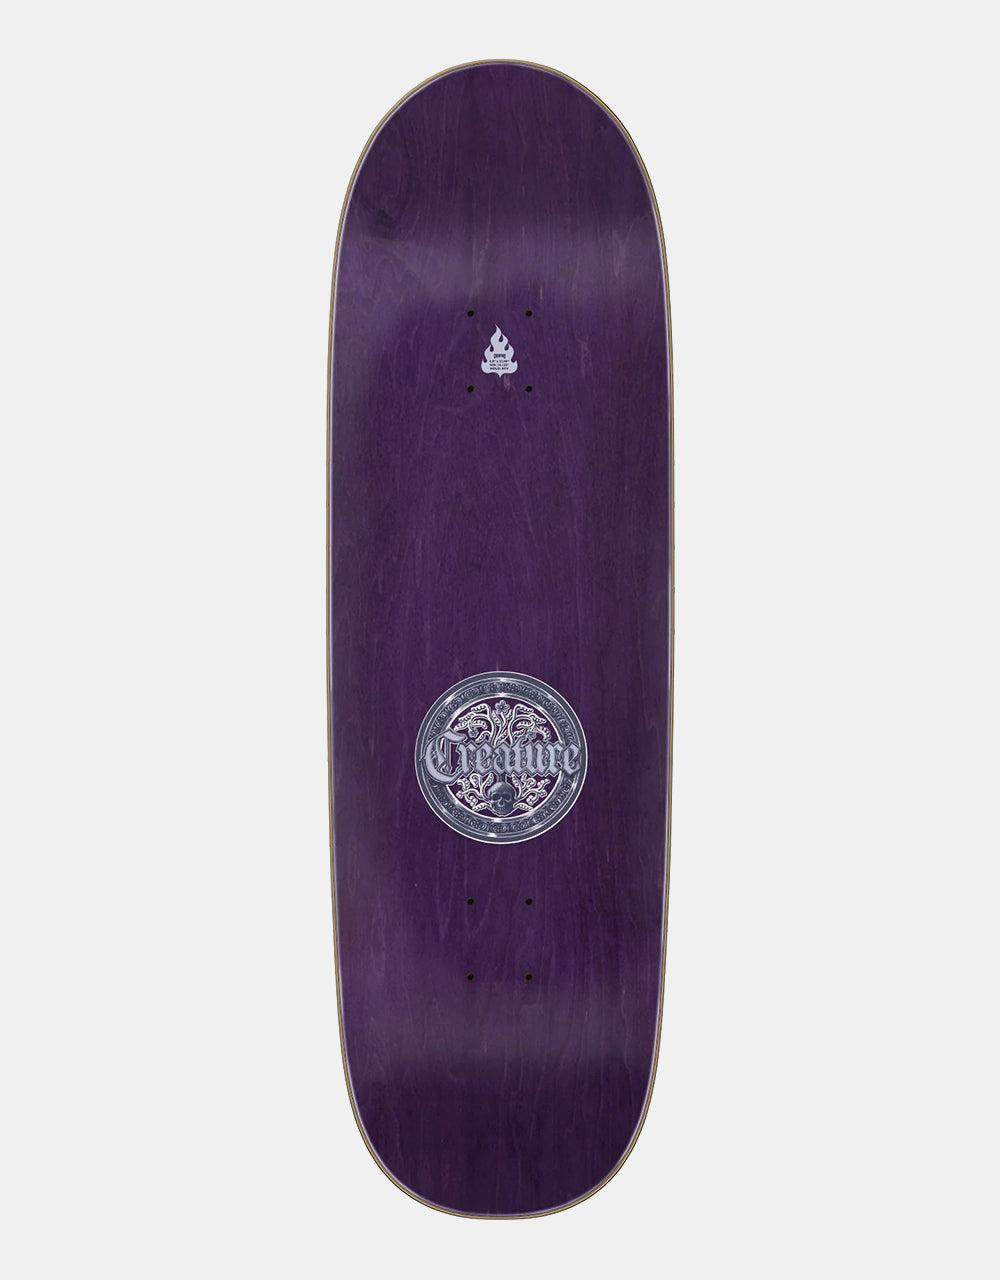 Creature Raffin Crest Skateboard Deck - 8.8"